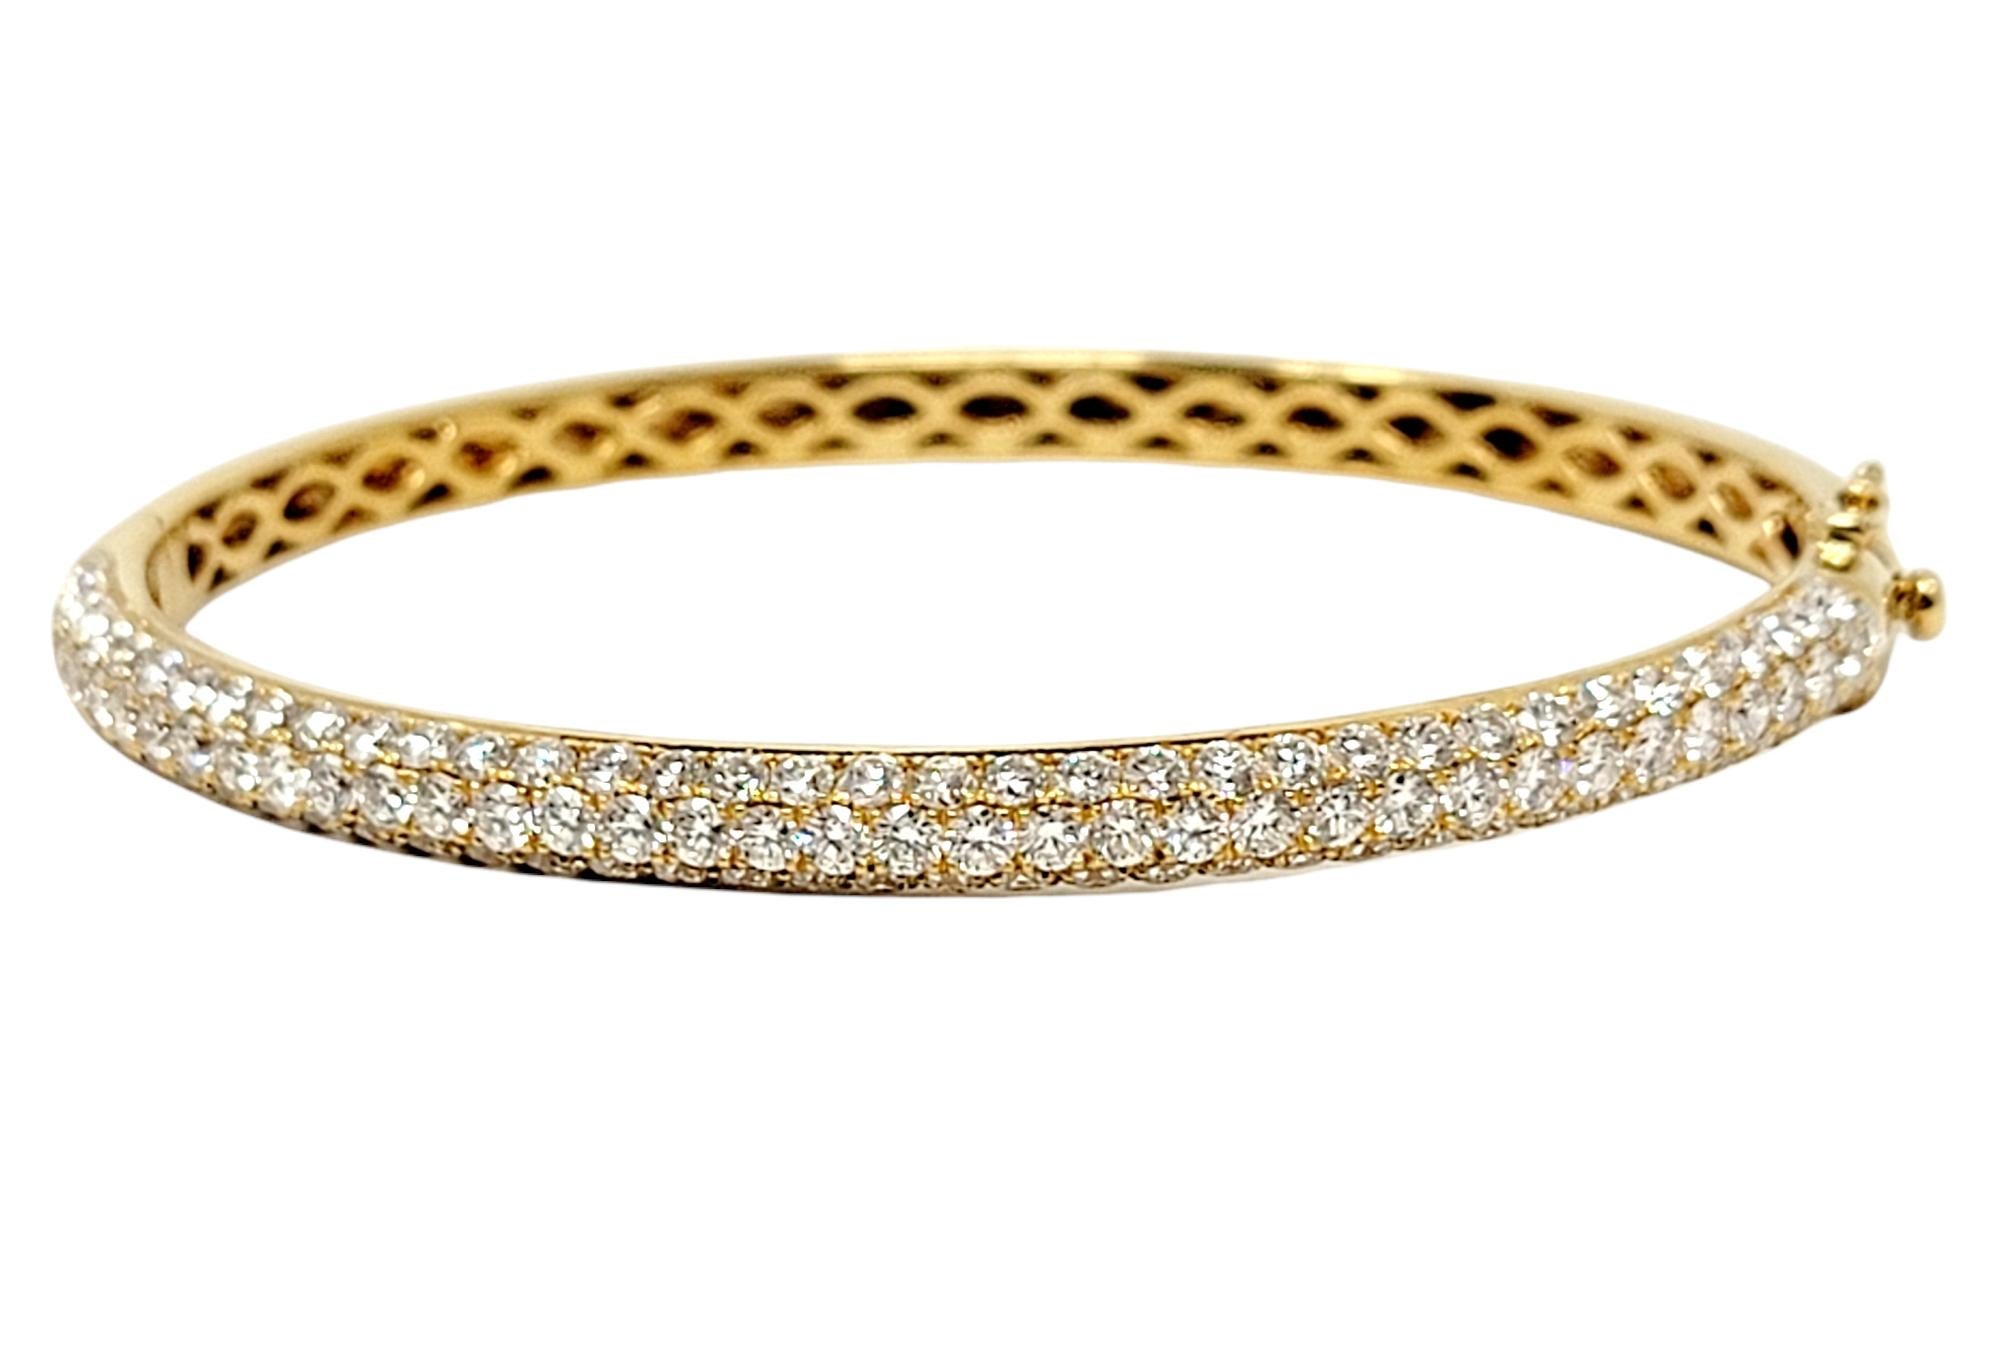 Wunderschönes Armreif-Armband von Oliver Smith Jeweler mit Diamanten. Das schlichte, moderne Design lässt die atemberaubenden, natürlichen, eisweißen Diamanten aus allen Blickwinkeln funkeln. Dieses unglaubliche Stück kann mit anderen Armbändern